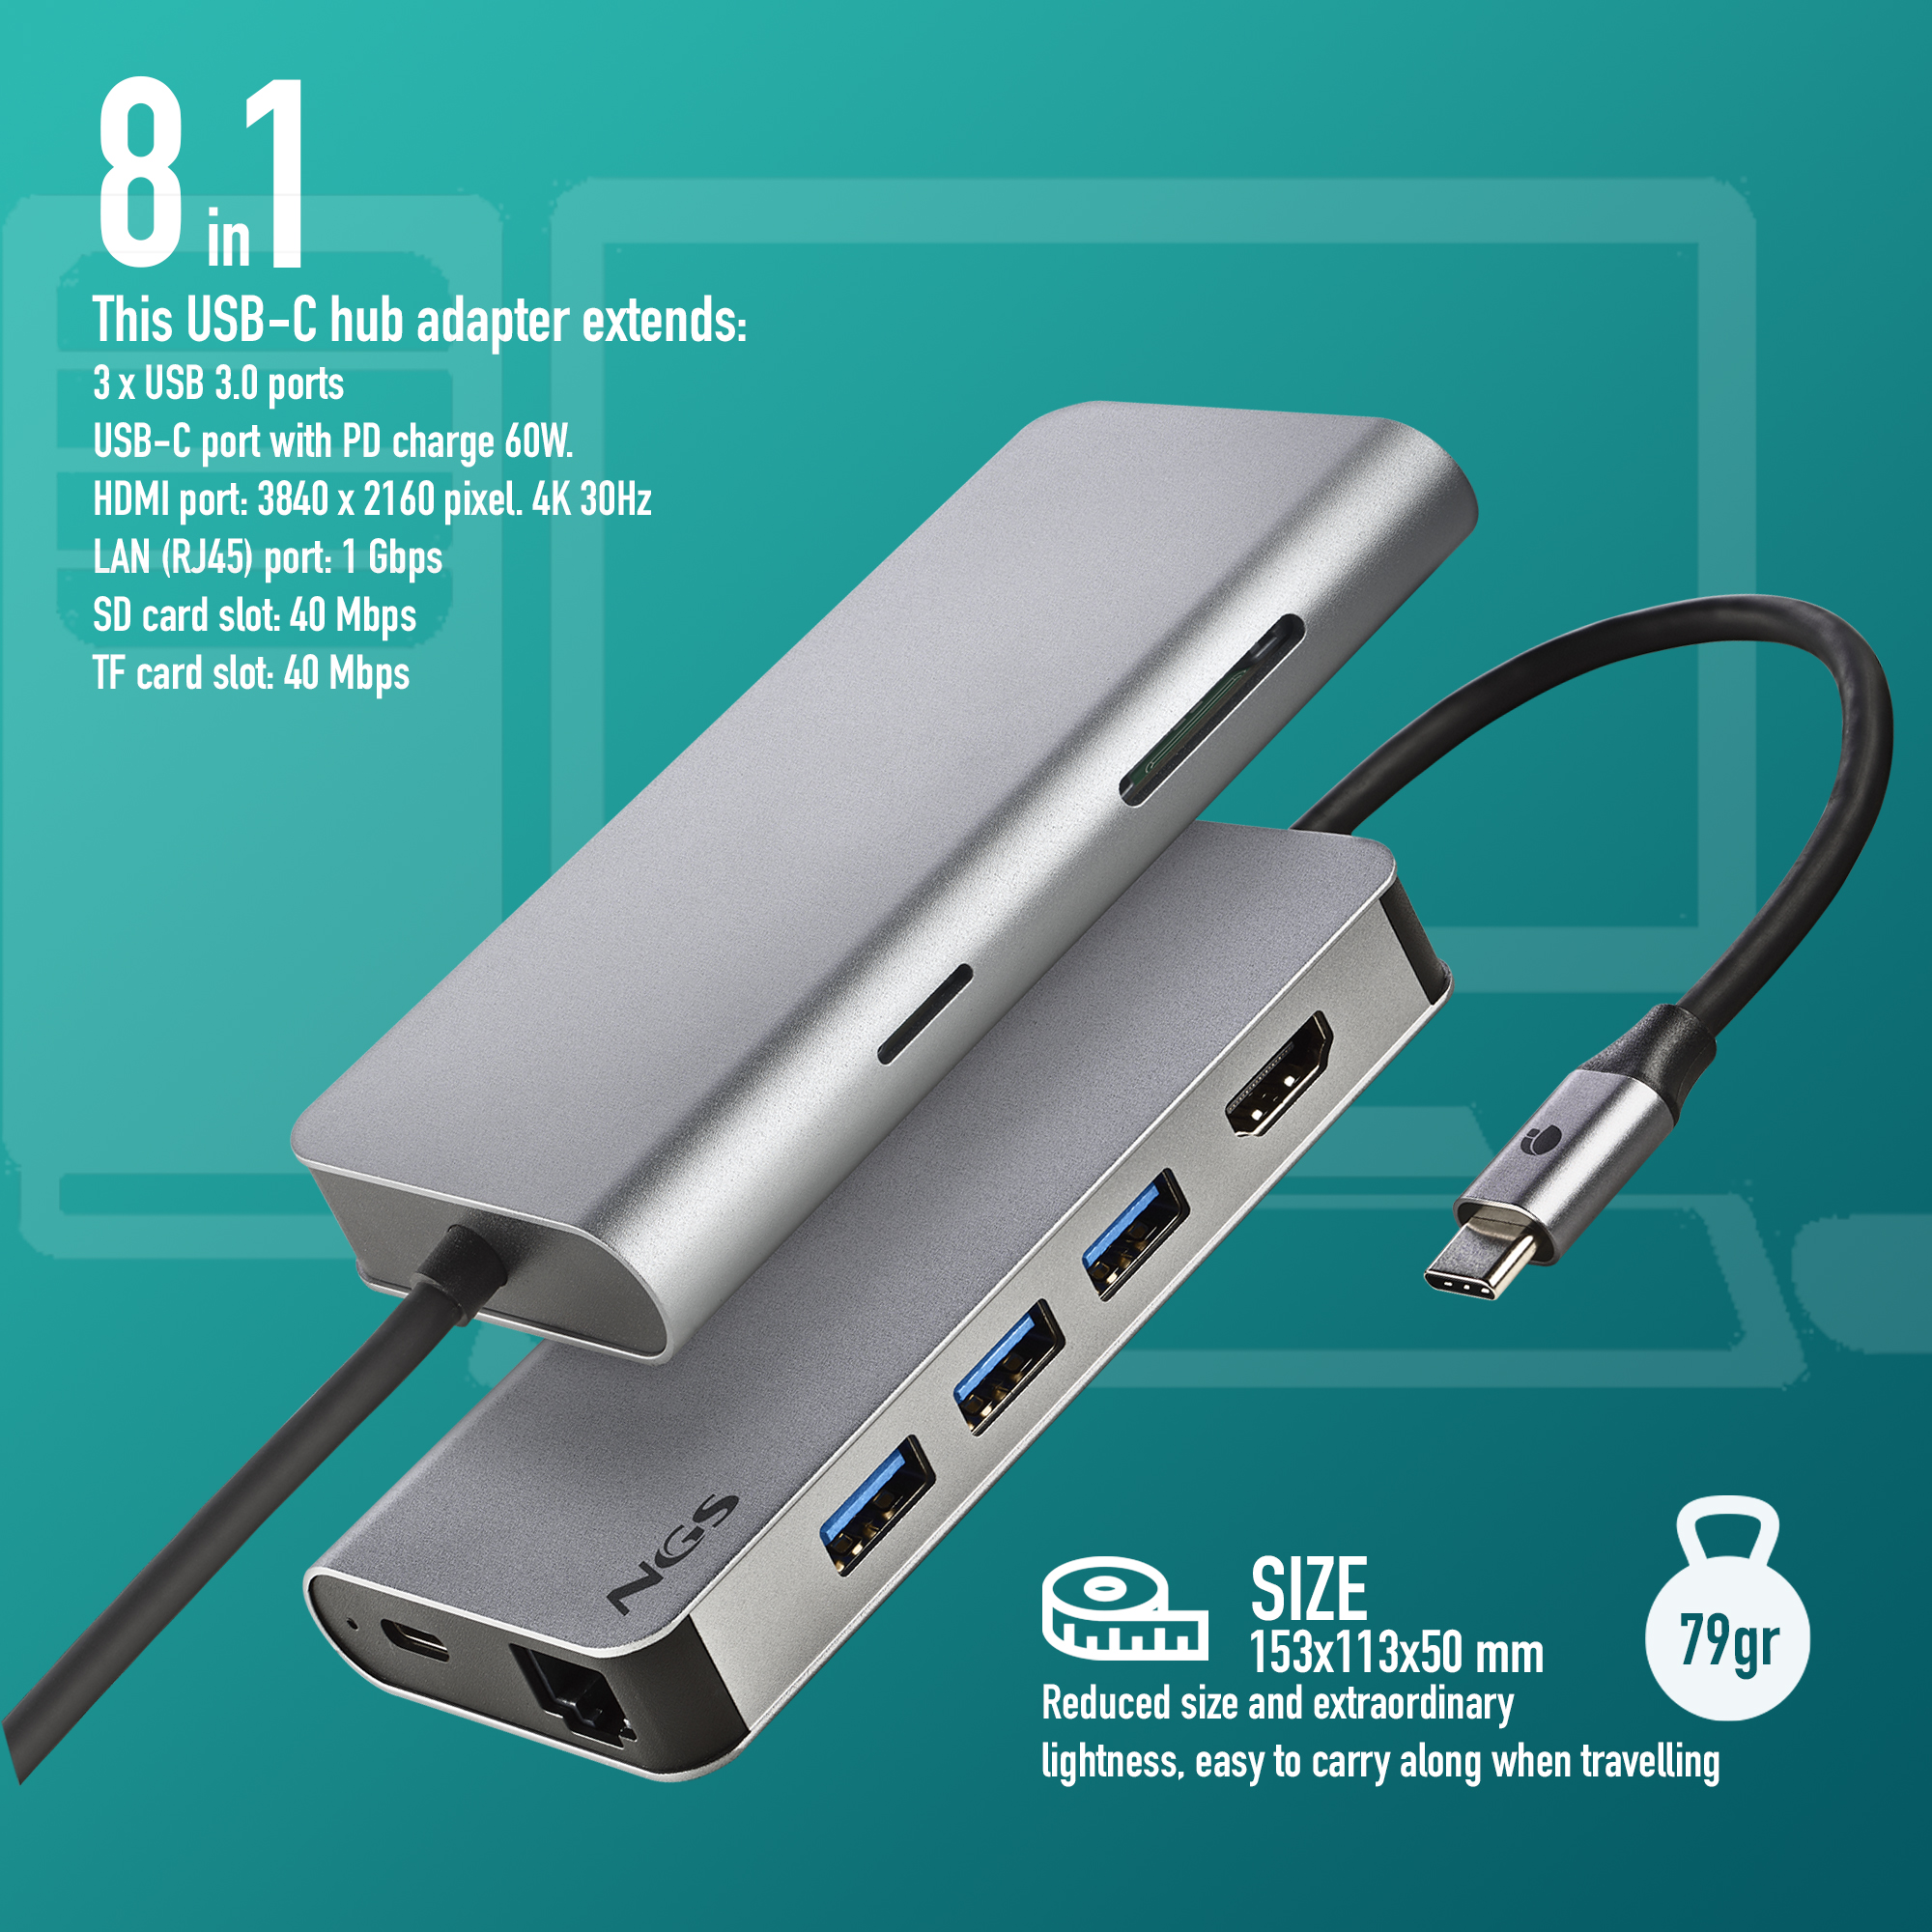 Silber USB Hub, WONDERDOCK8, NGS